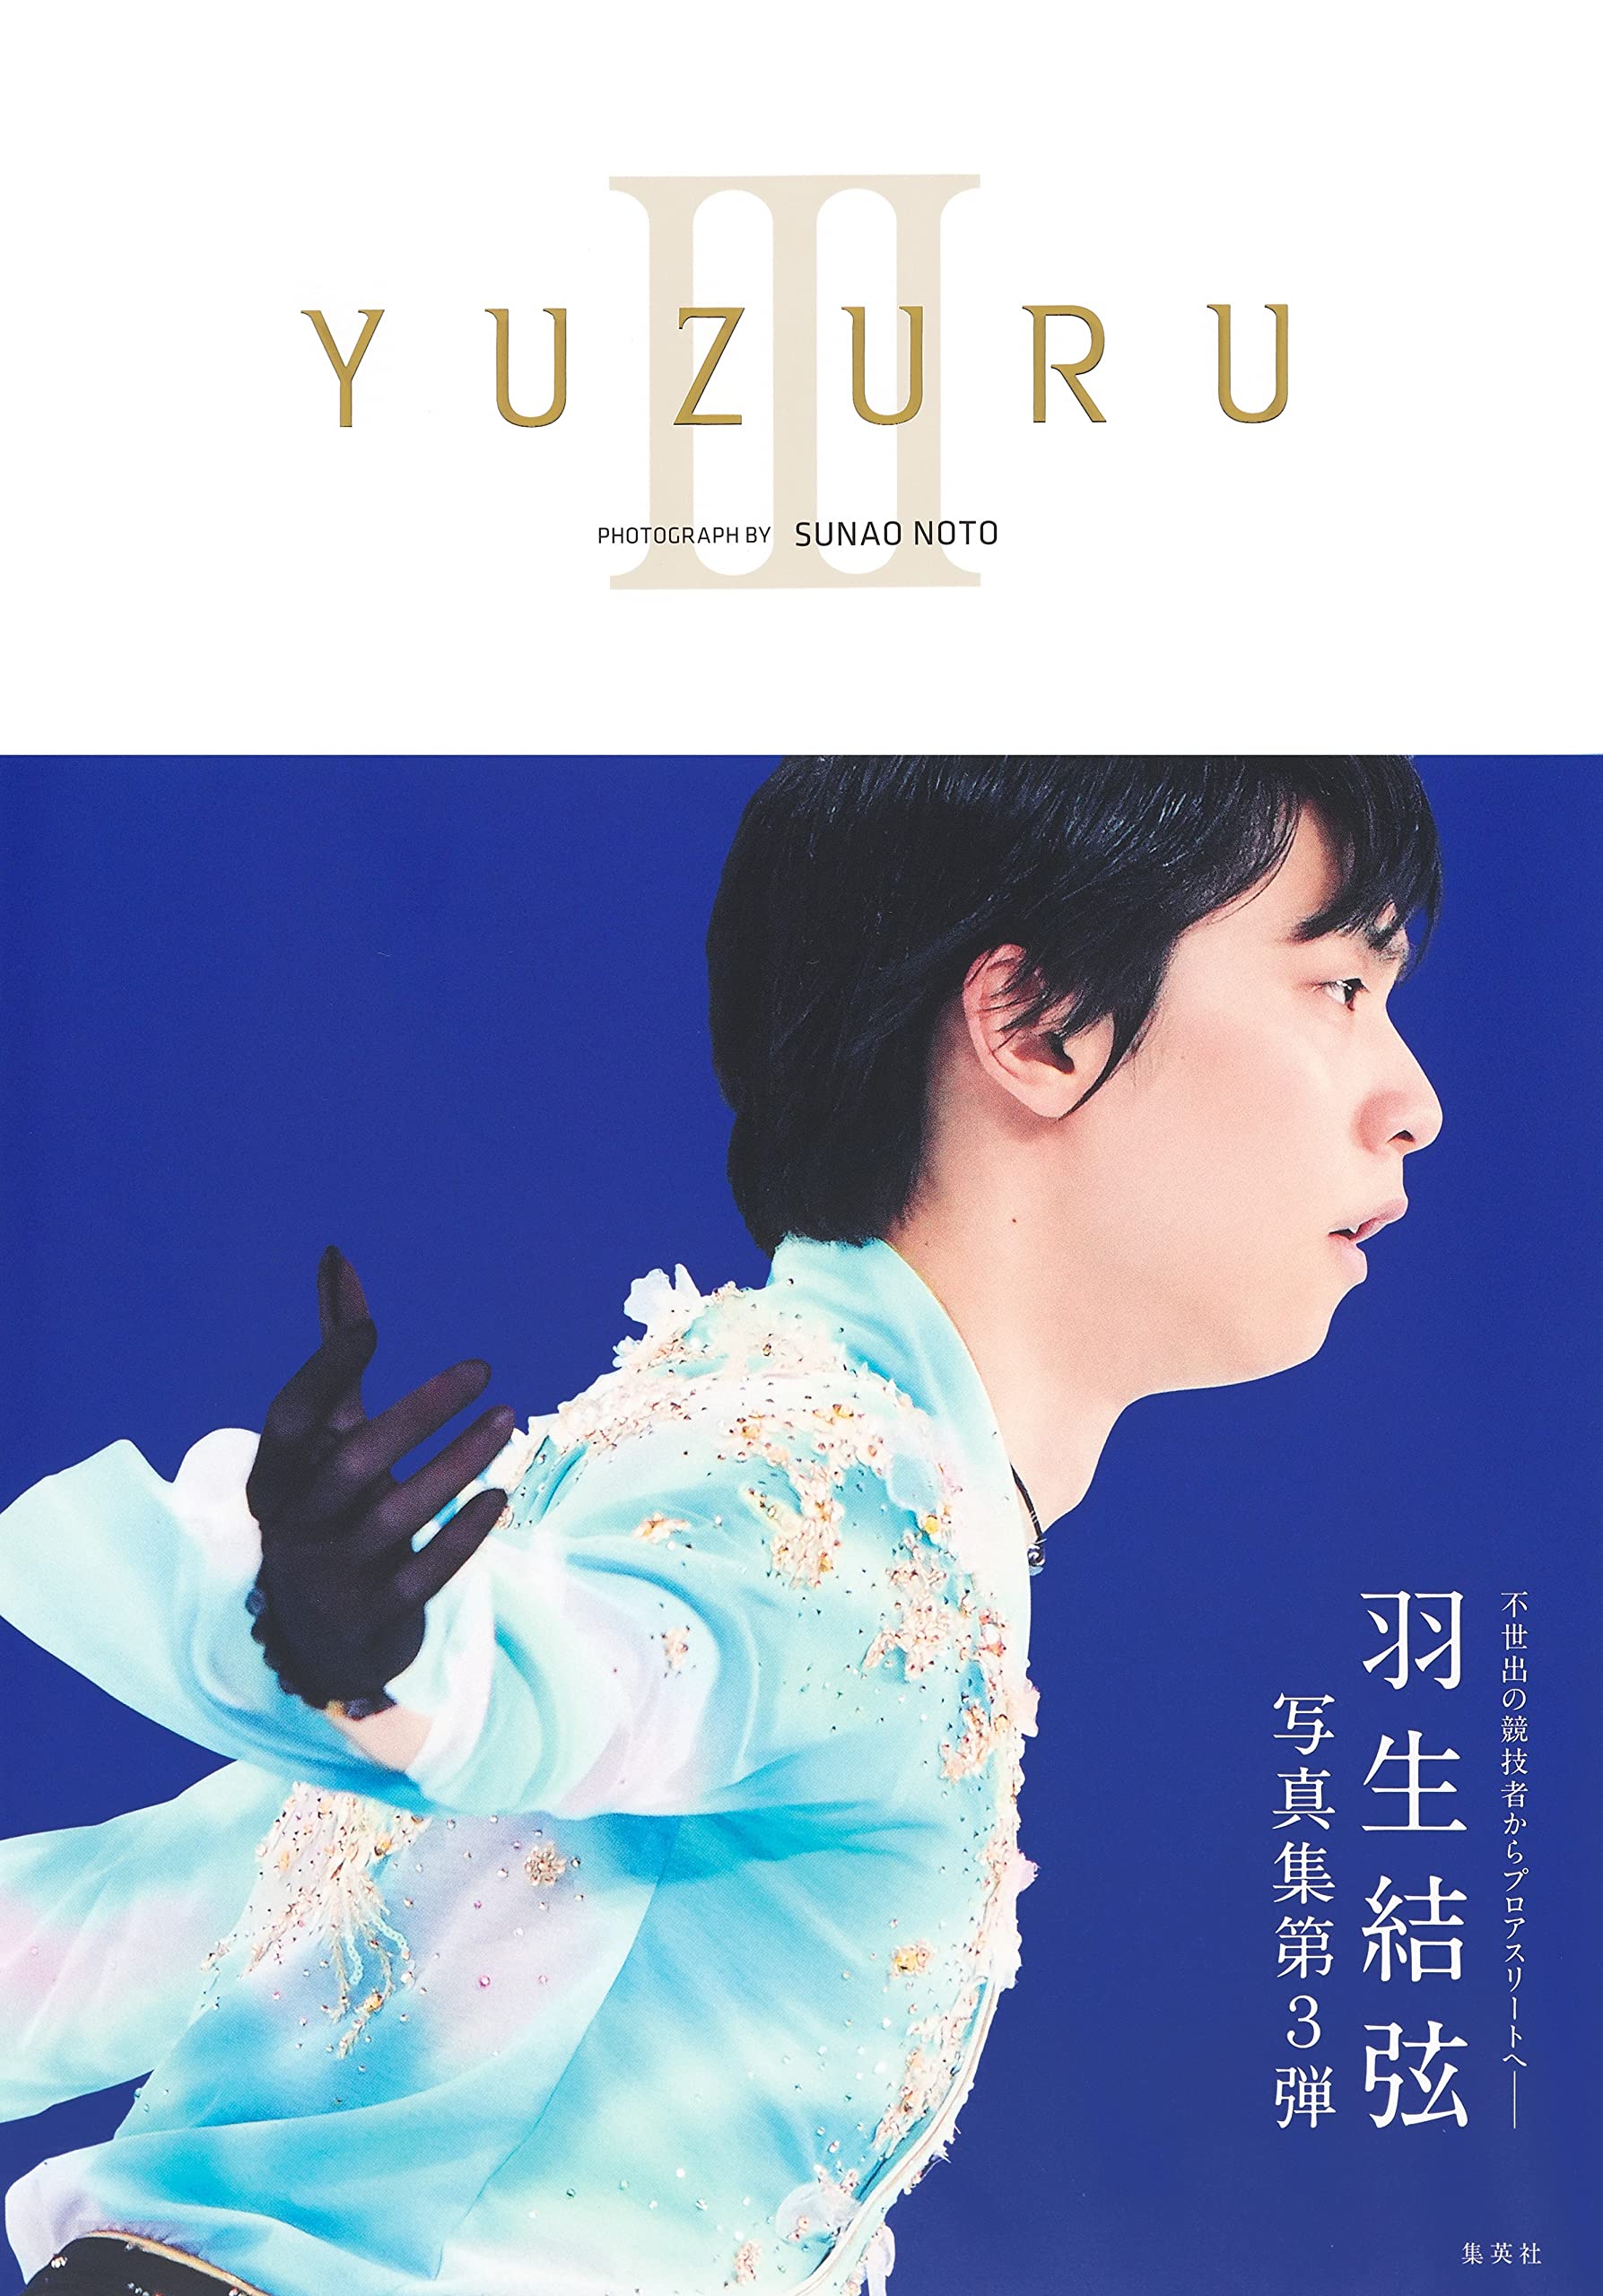 羽生結弦写真集: YUZURU III | 誠品線上